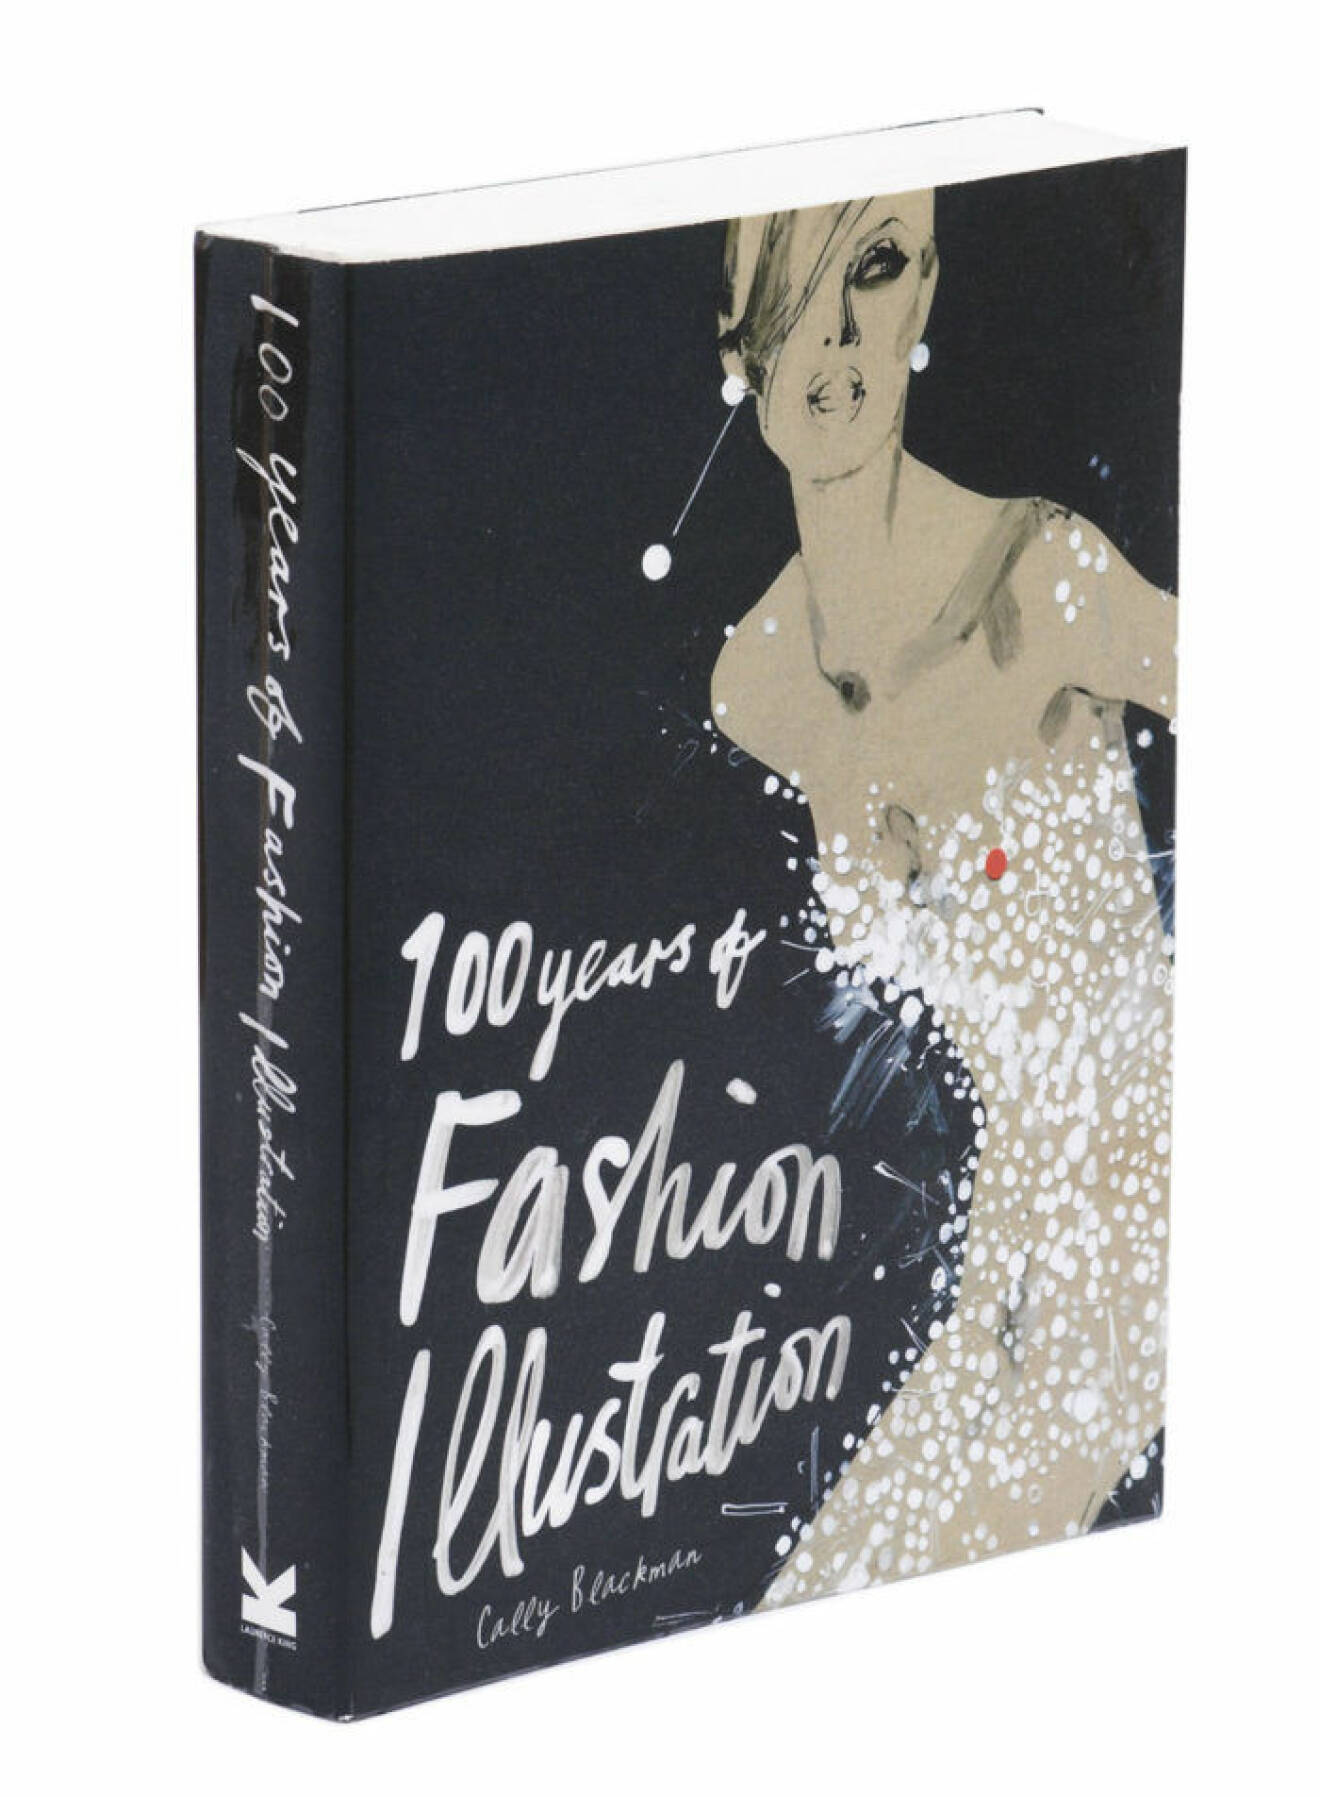 100 Years Of Fashion Illustration (Laurence King Publishing)